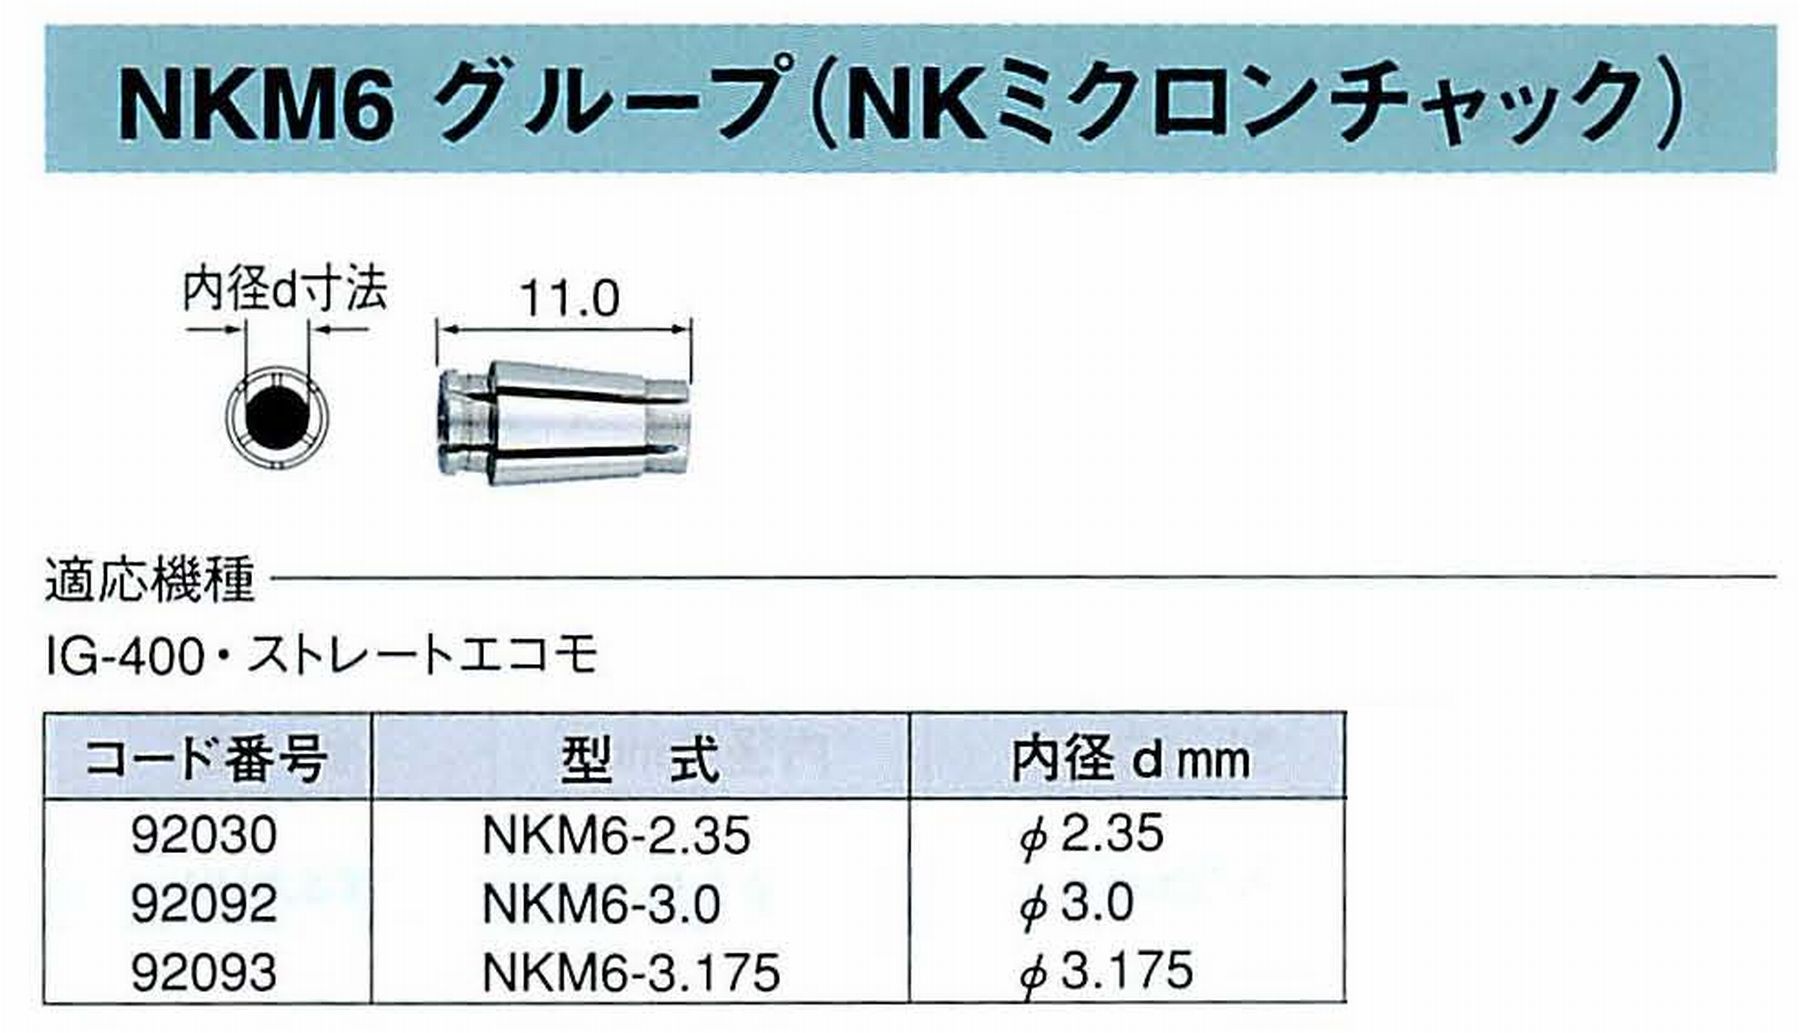 ナカニシ/NAKANISHI コレットチャック NKミクロンチャック コード番号 92093 型式 NKM6-3.175 内径:Φ3.175